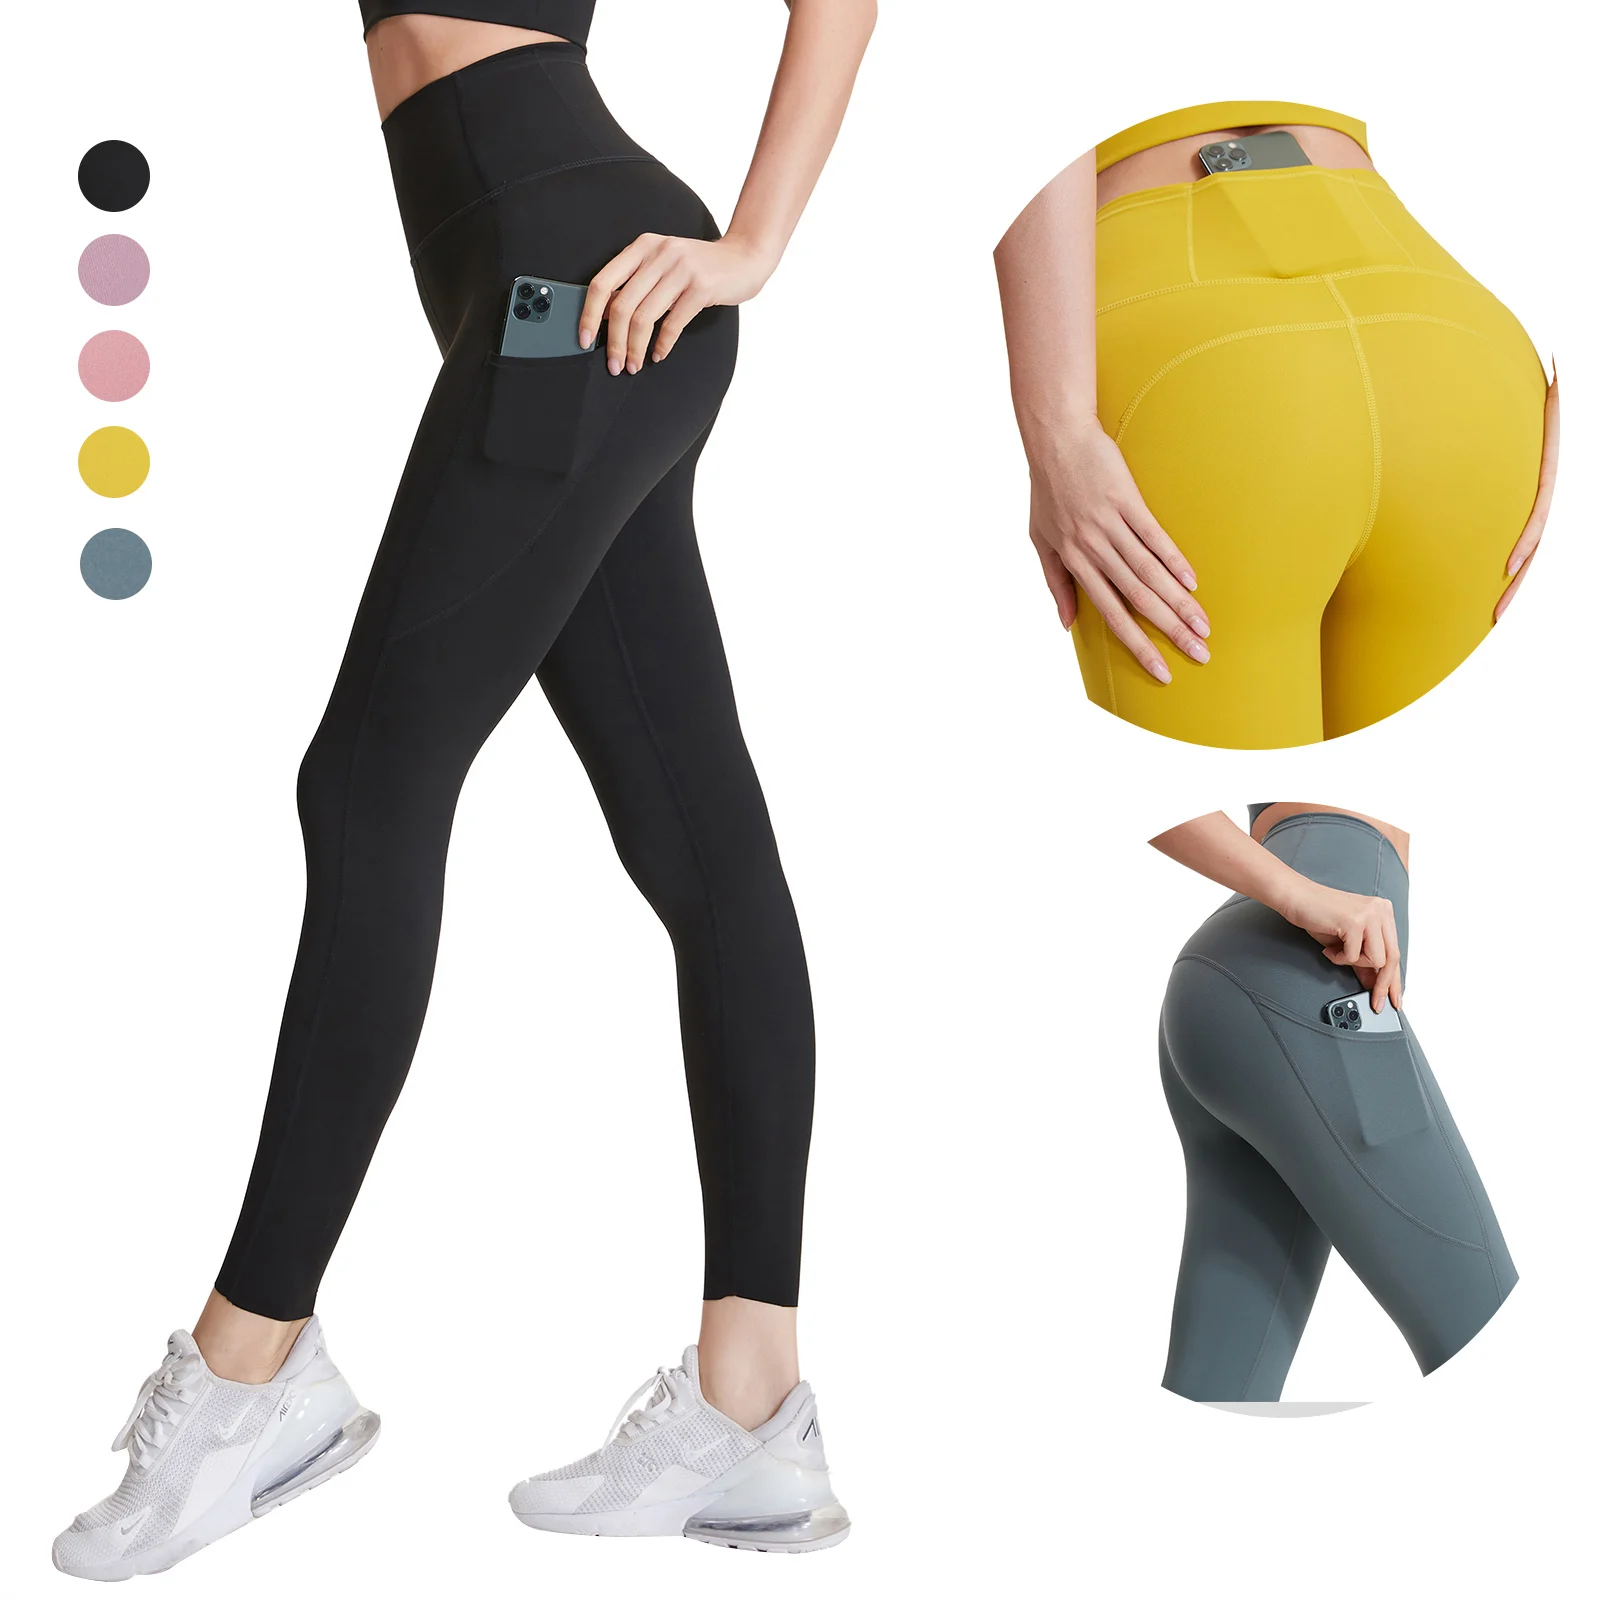 

NEW 75% Nylon 25% Spandex Women Workout Fitness Gym Leggins Custom Yoga Pants Leggings for High Waist Naked Feeling With Pocket